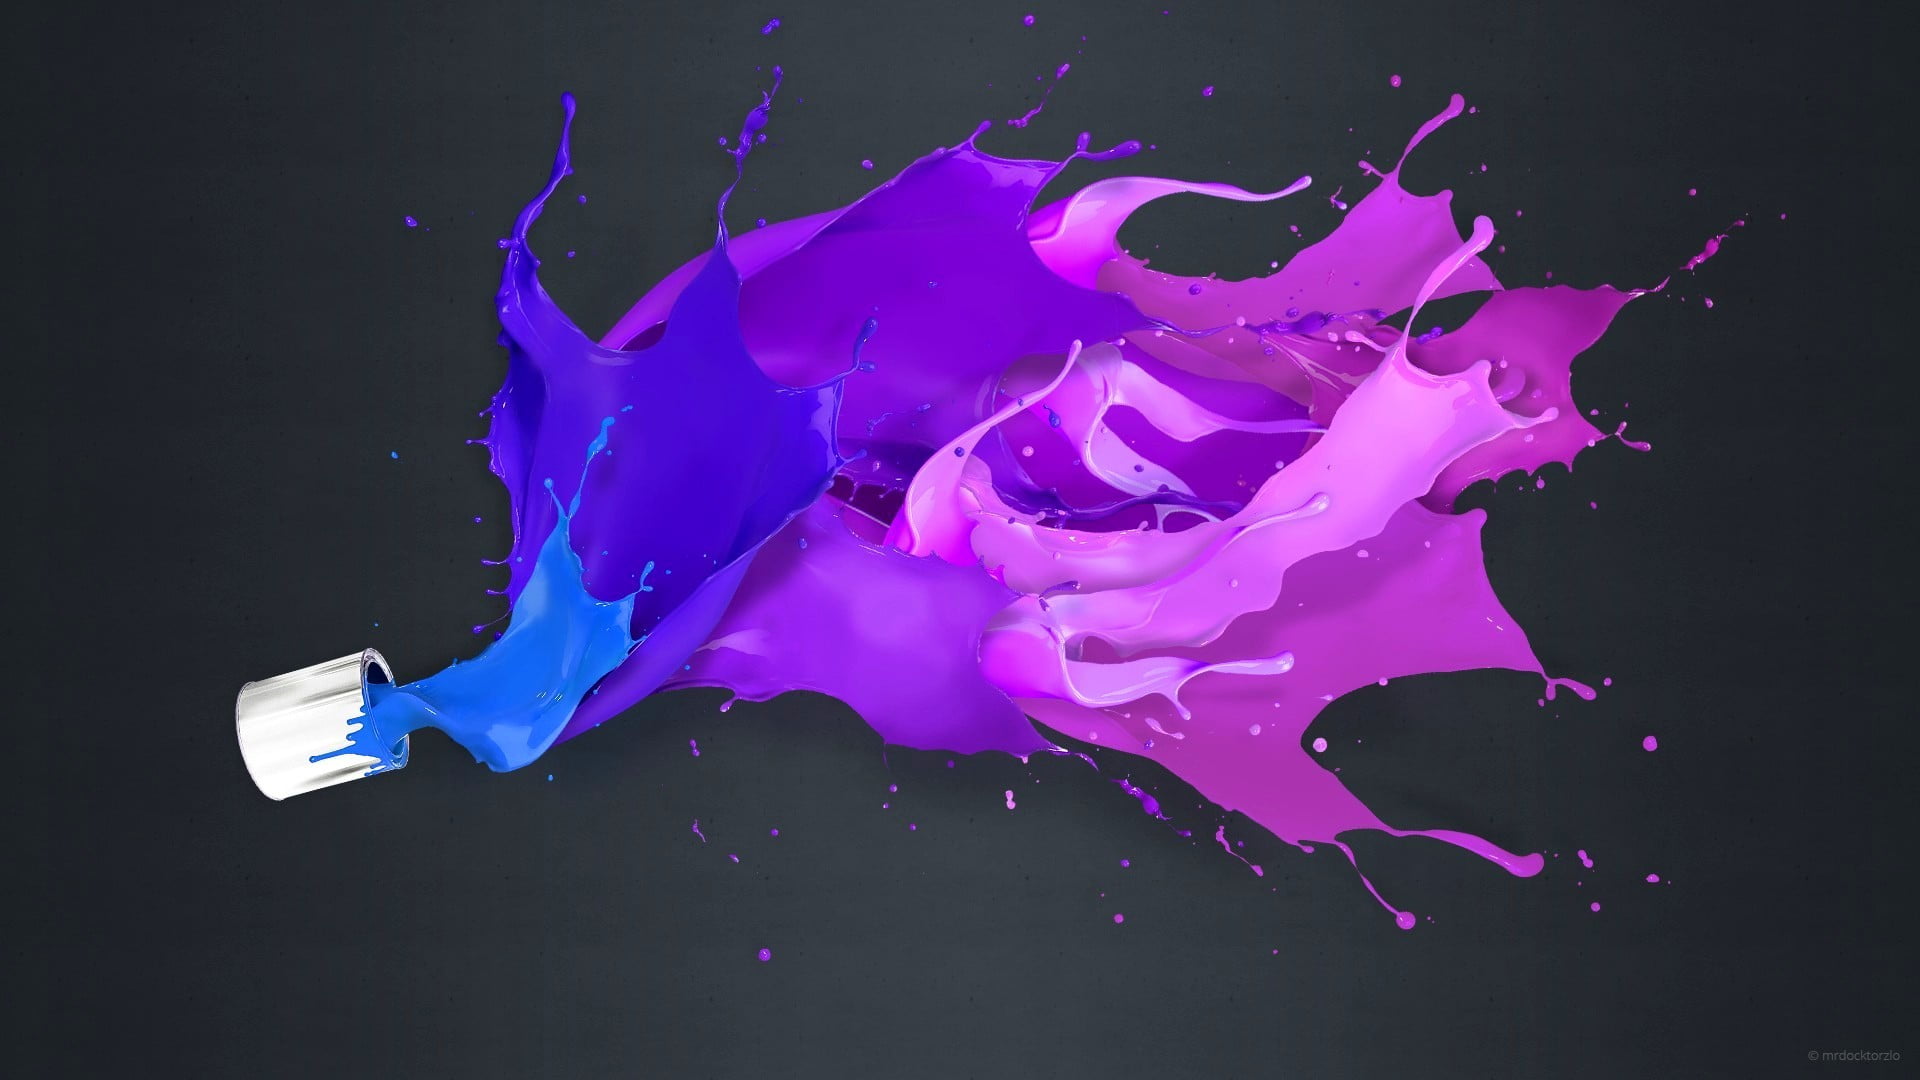 pink and purple paint splatter illustration, painting, liquid